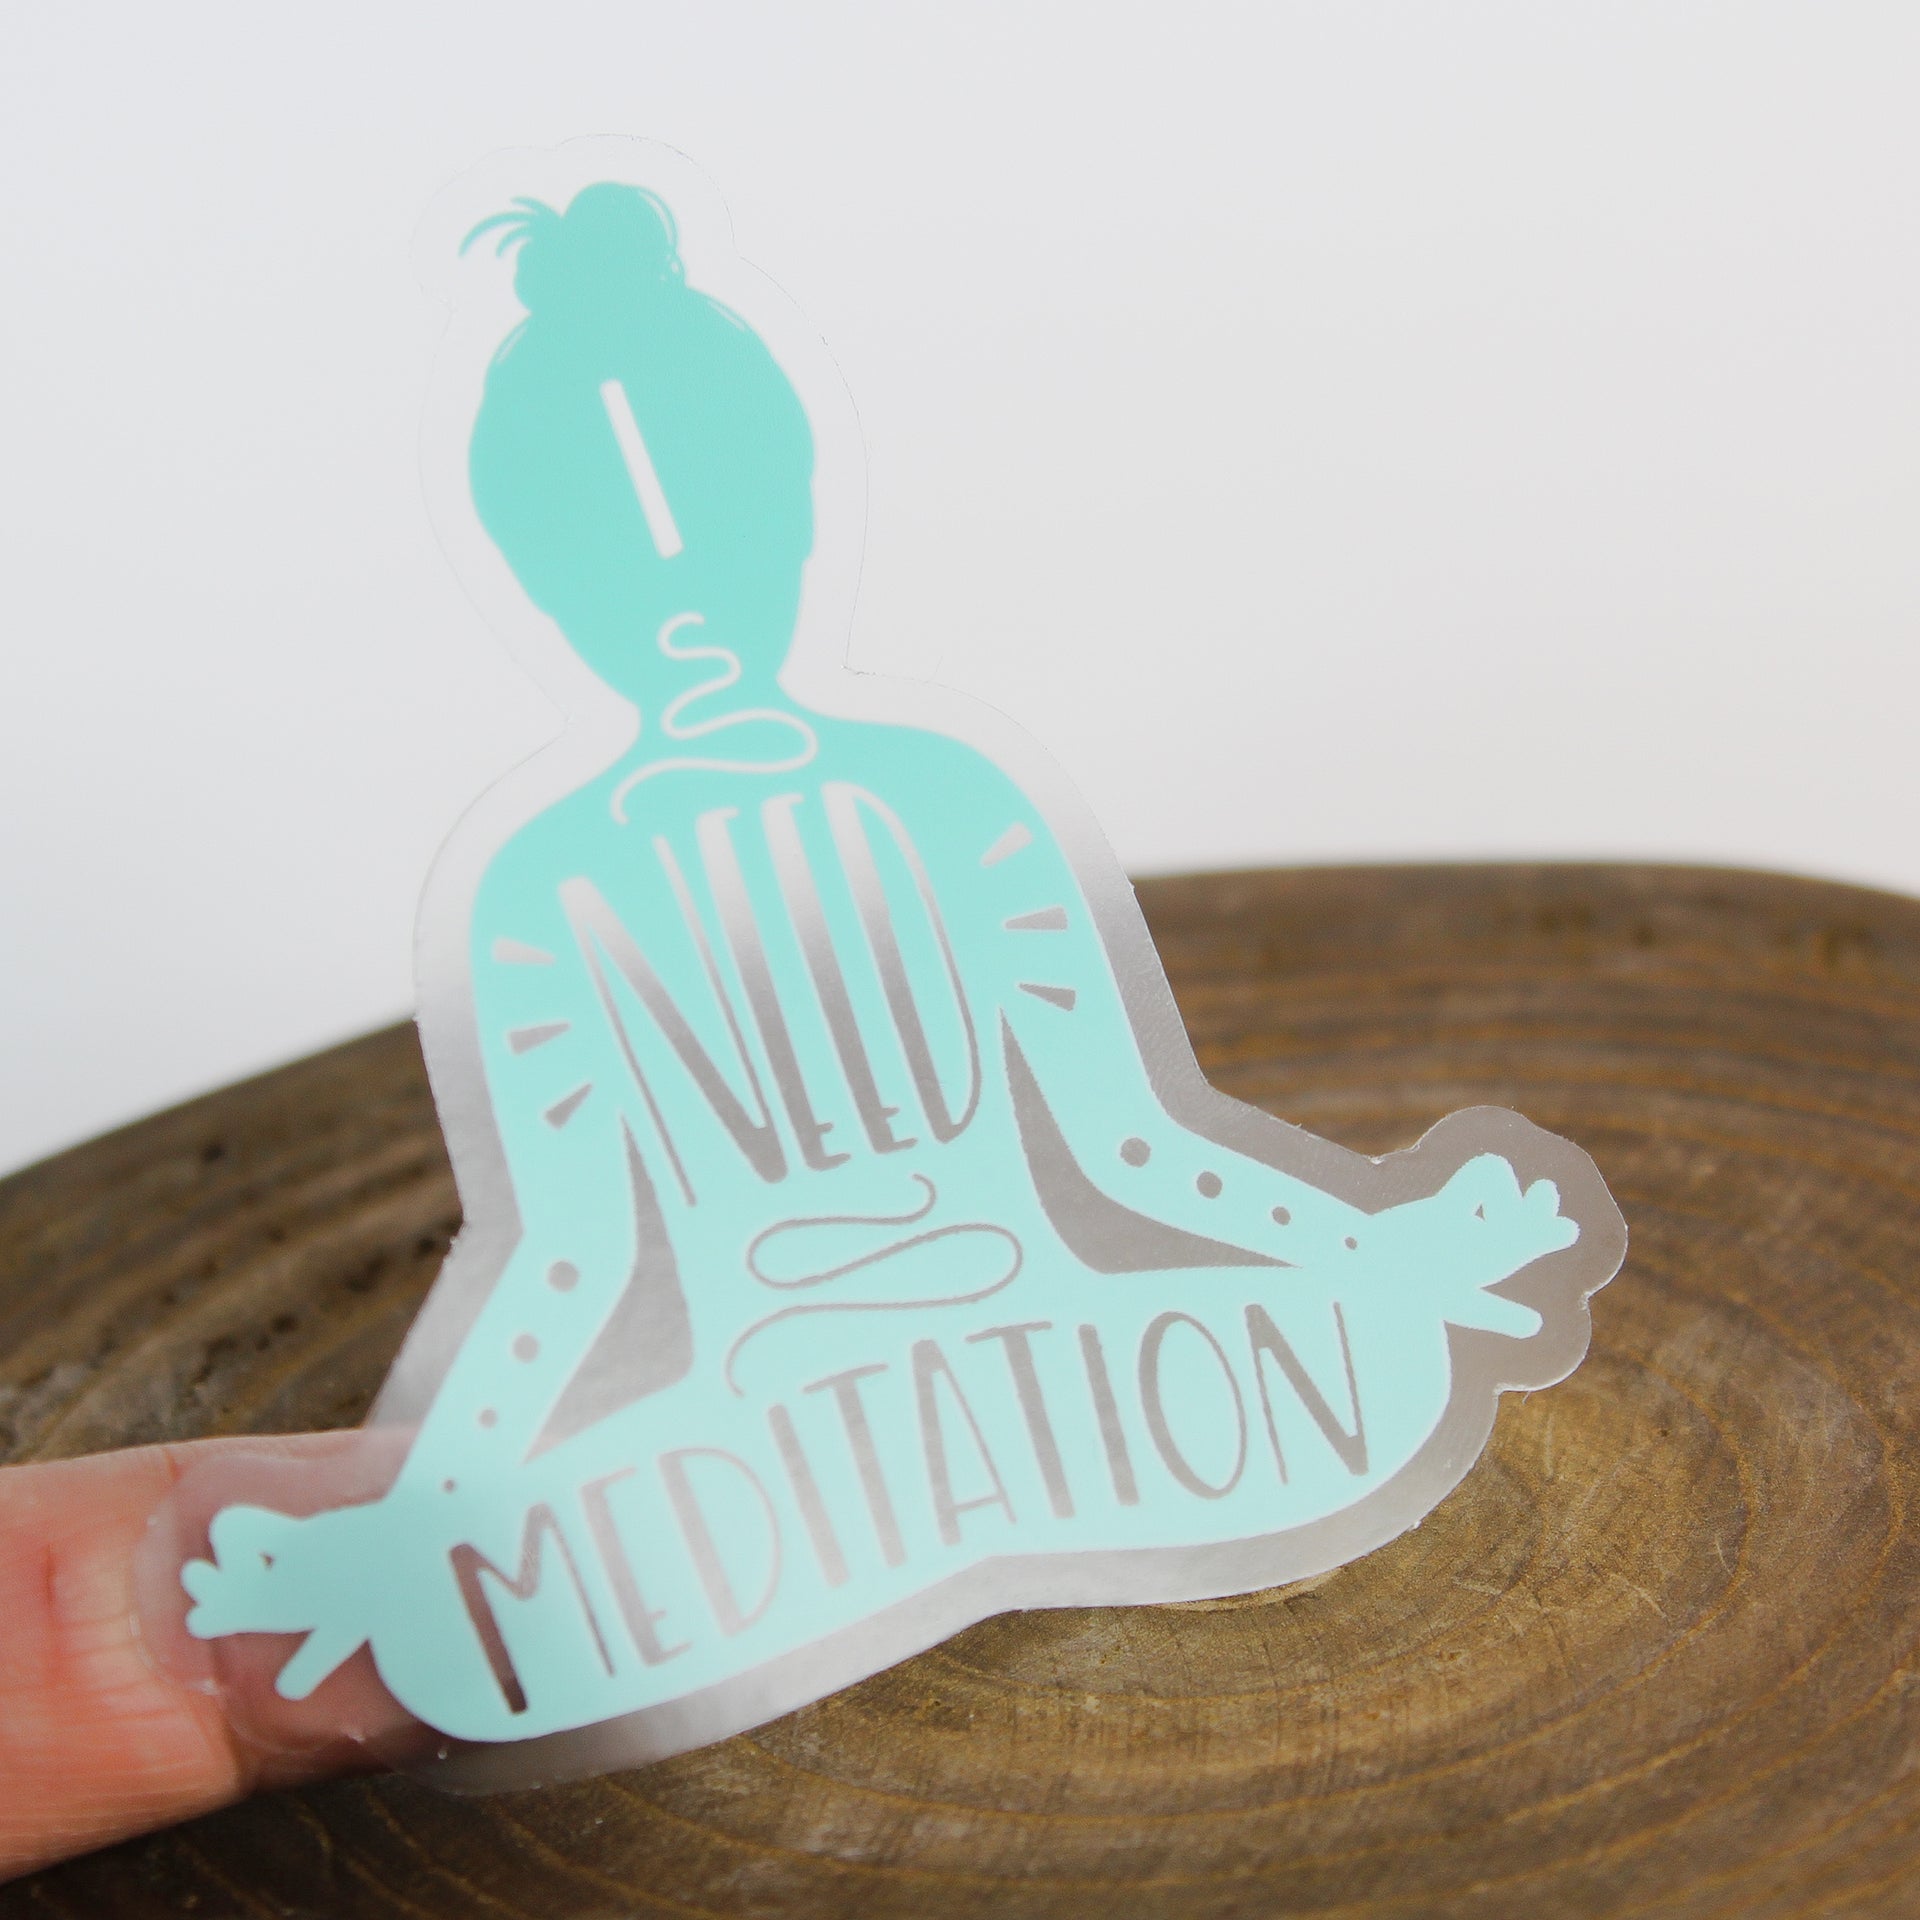 Meditation Inspiration Sticker 